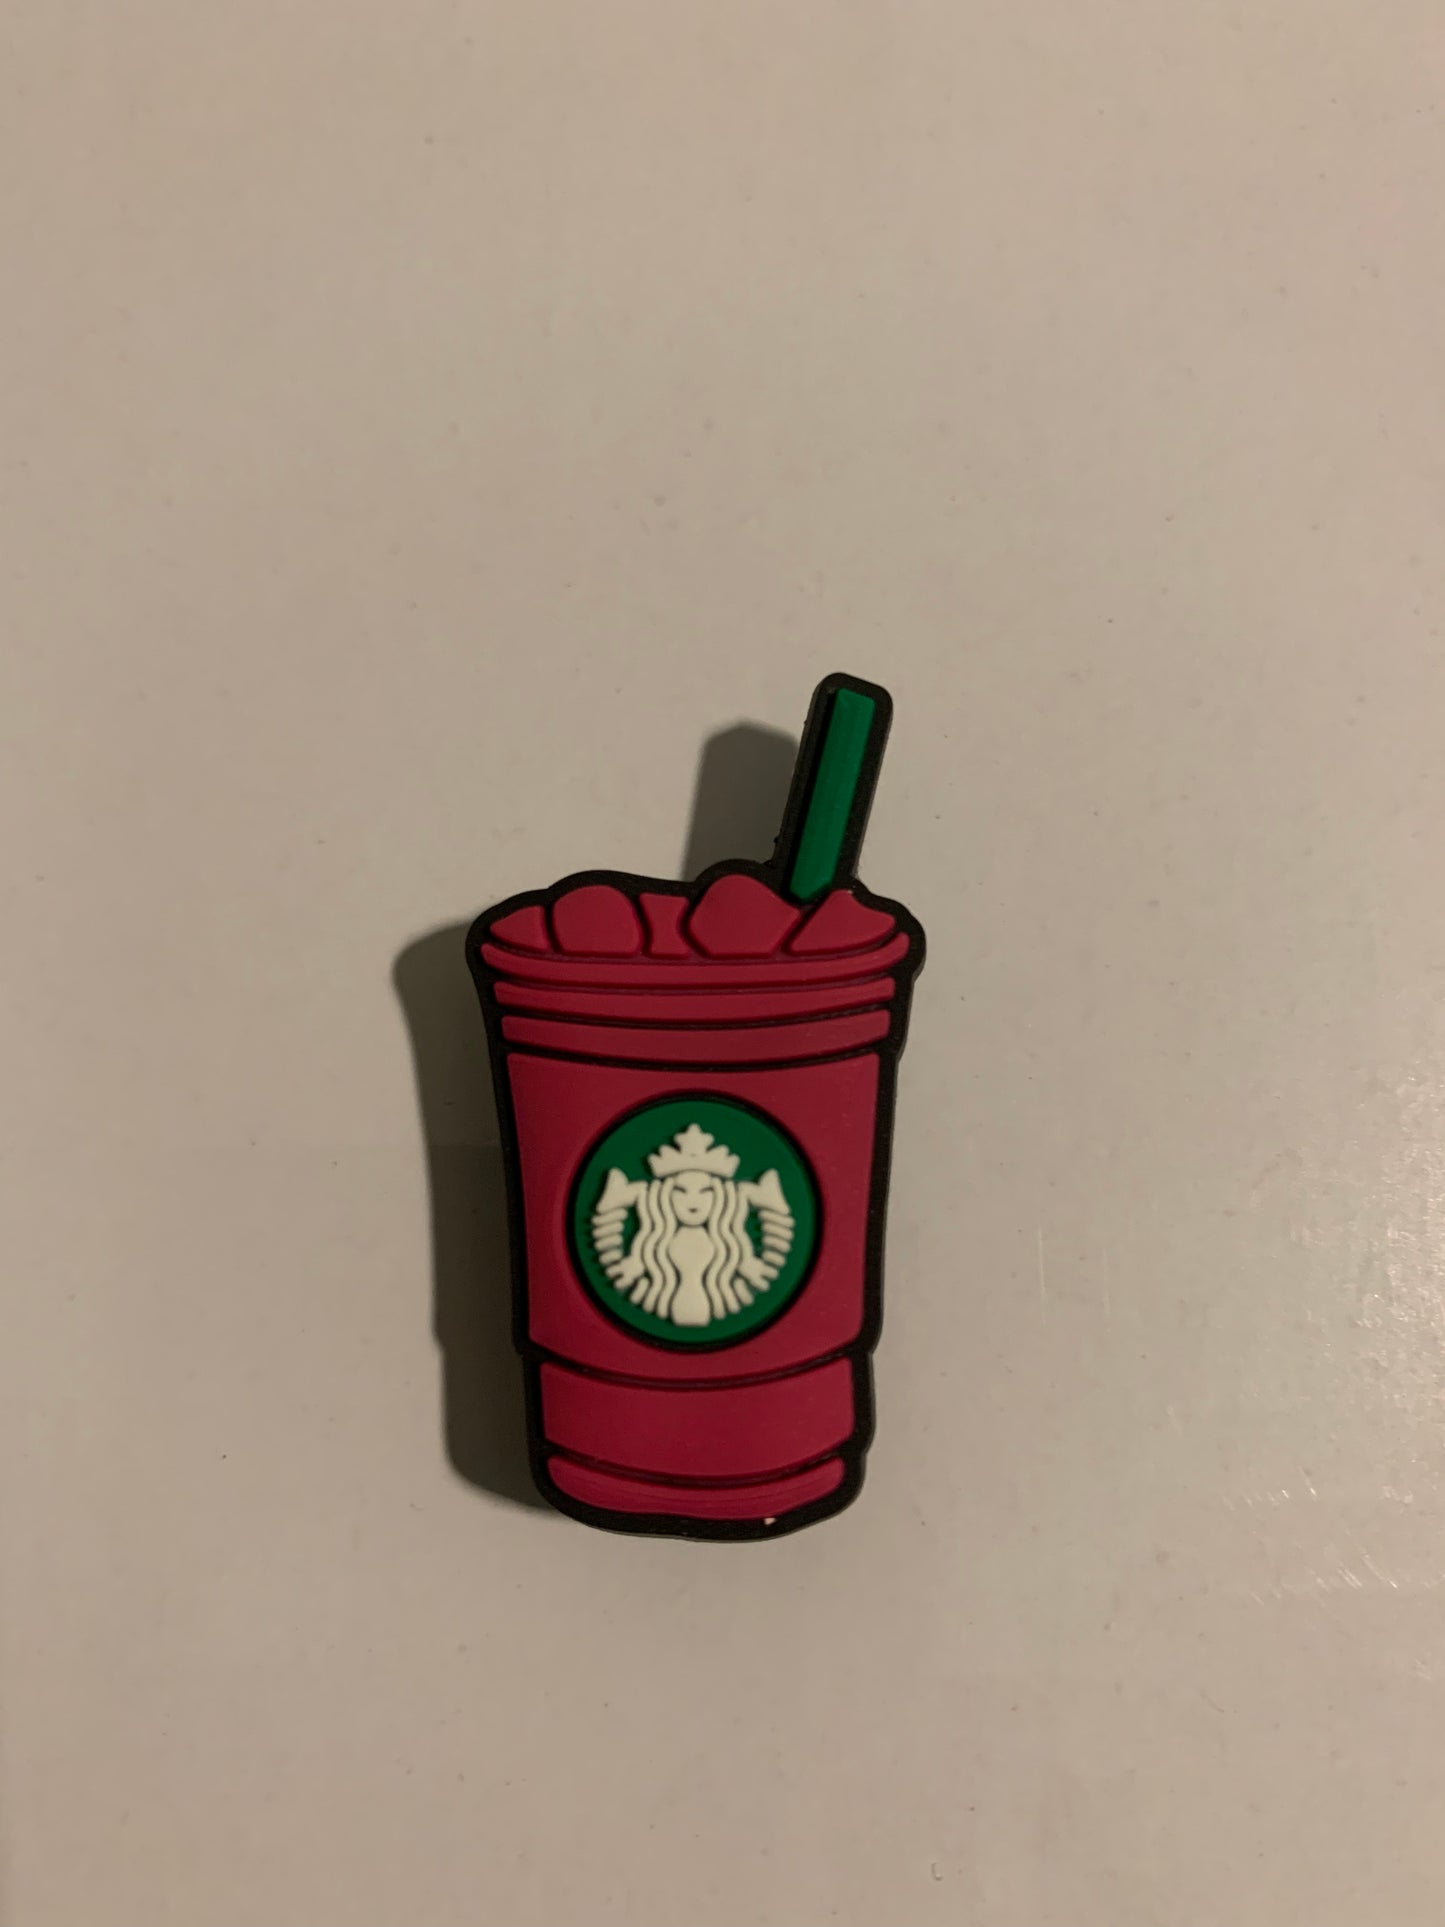 Starbucks inspired